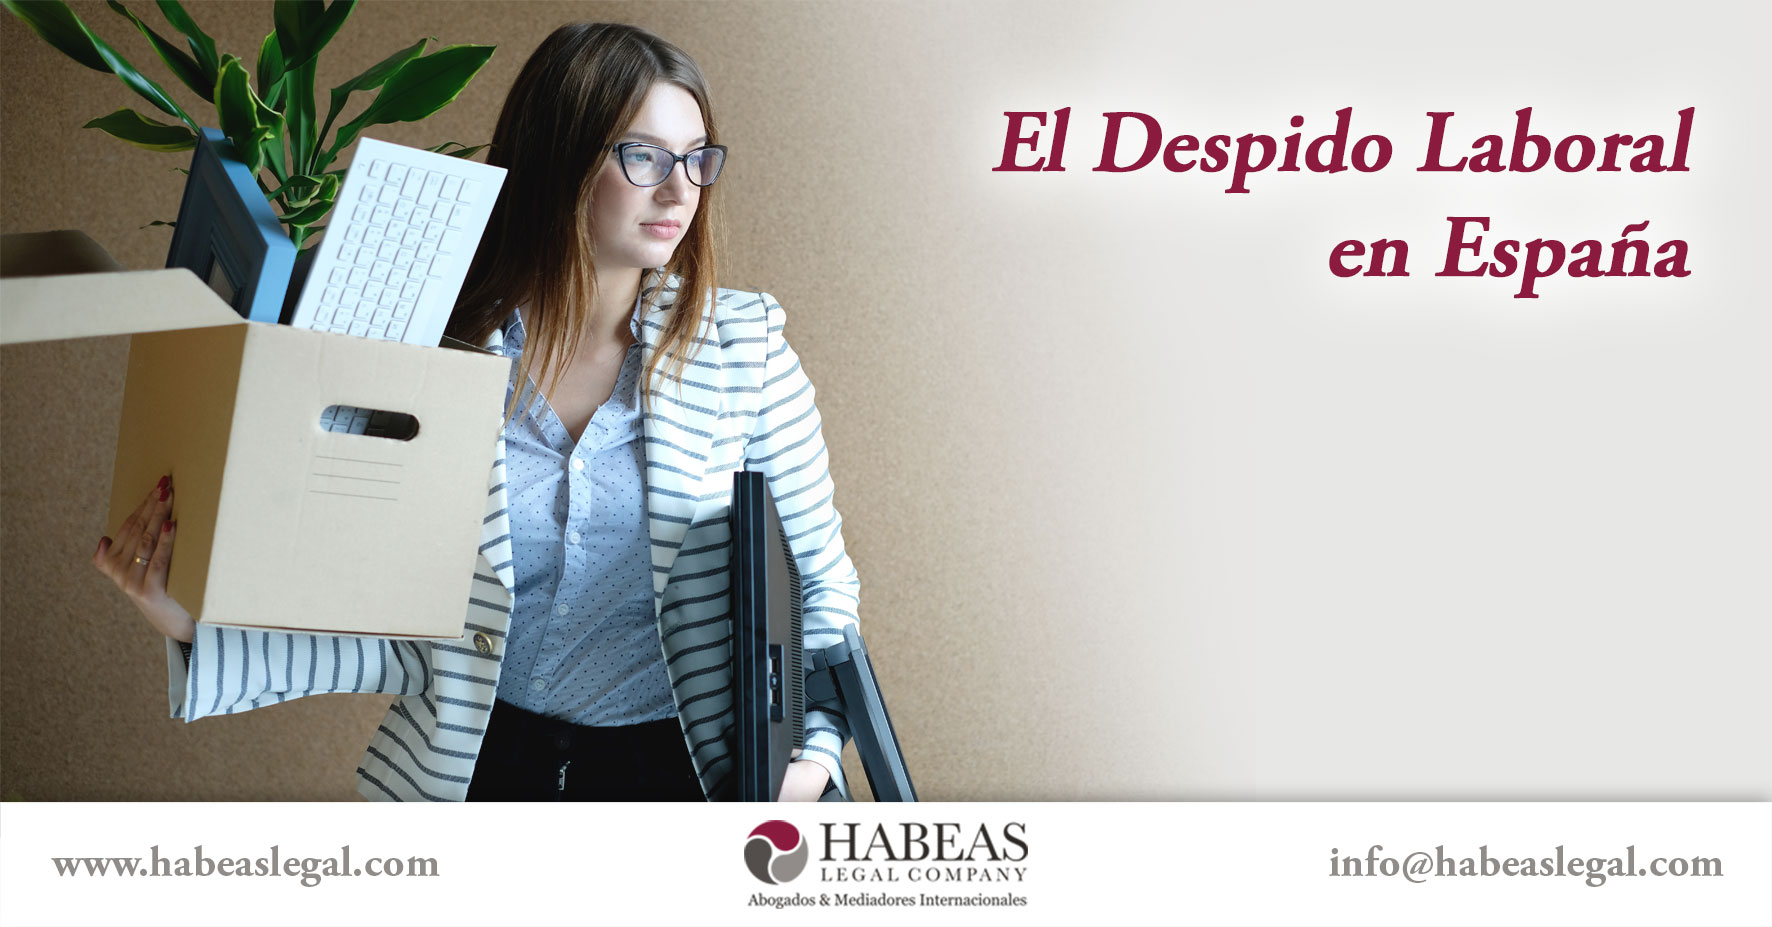 El Despido Laboral Espana Habeas Legal - Abogados Internacionales especializados en Extranjería, Inmigración y Laboral